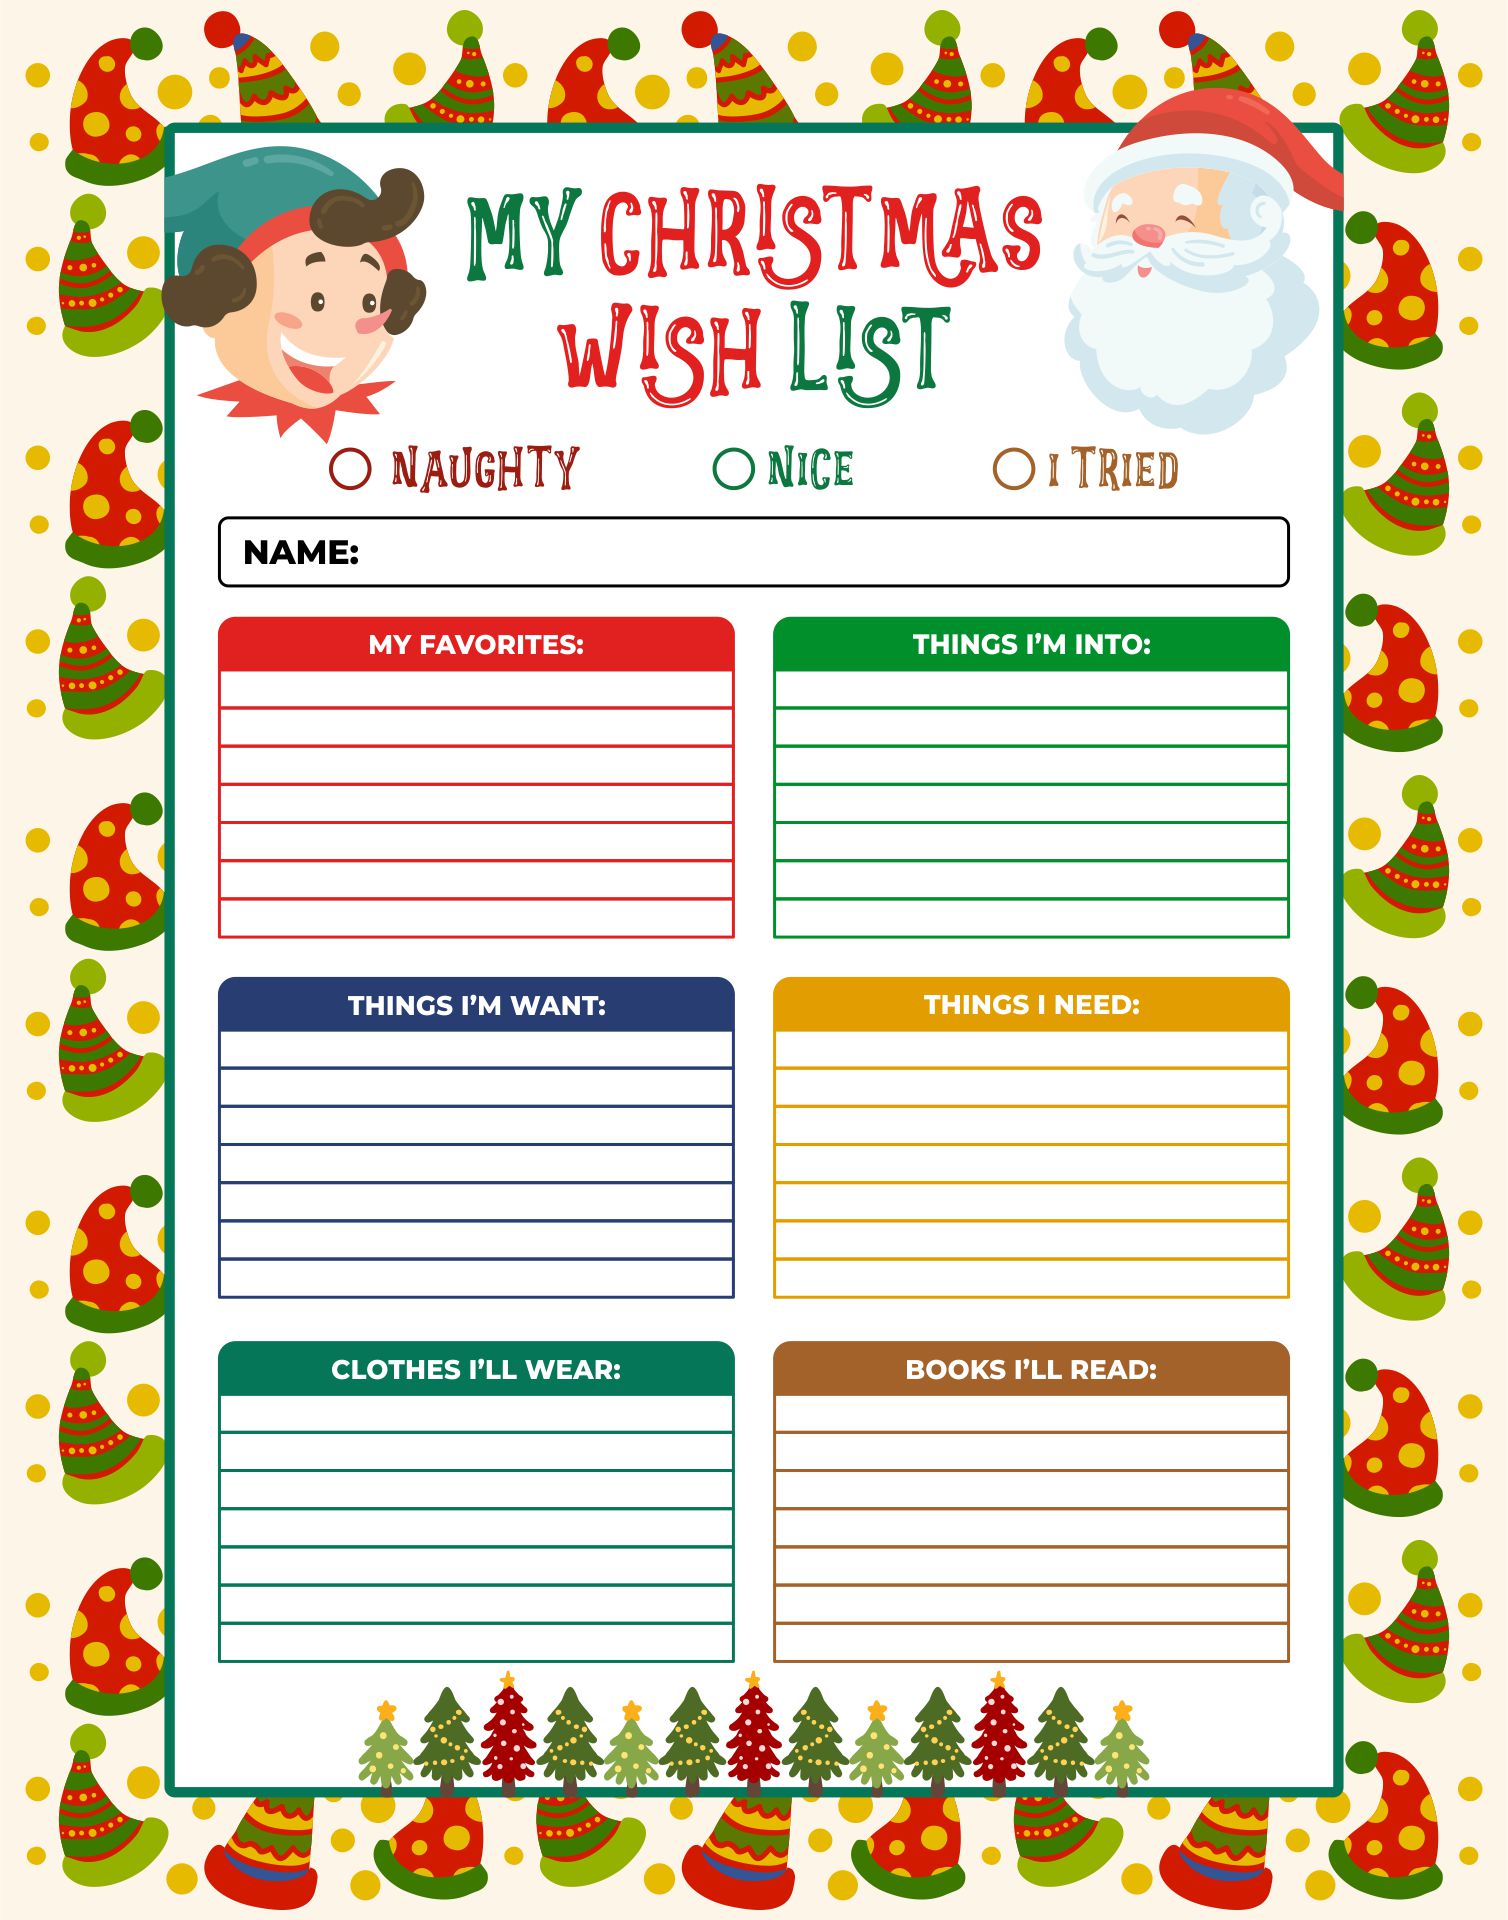 Printable Colorful Christmas Wish List Templates For Students